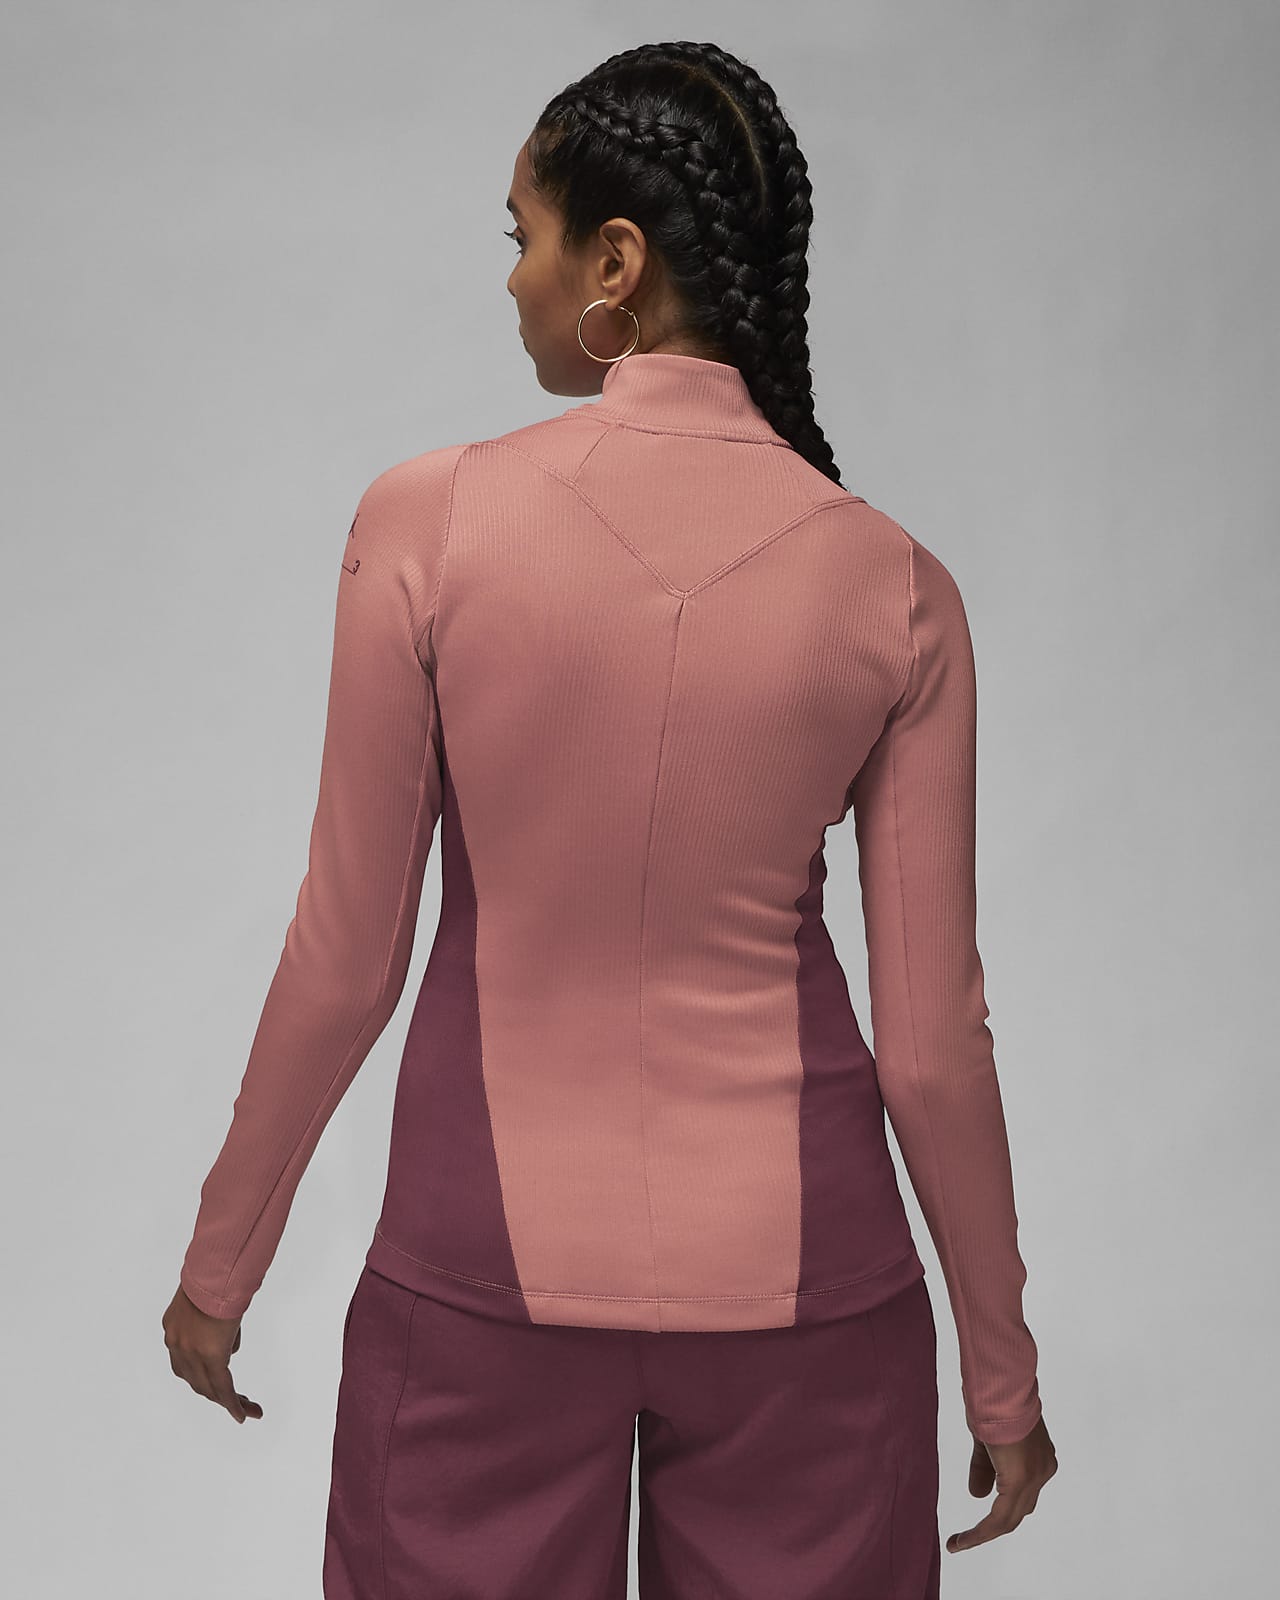 Jordan 23 Engineered Women's 1/4-Zip Long-Sleeve Top